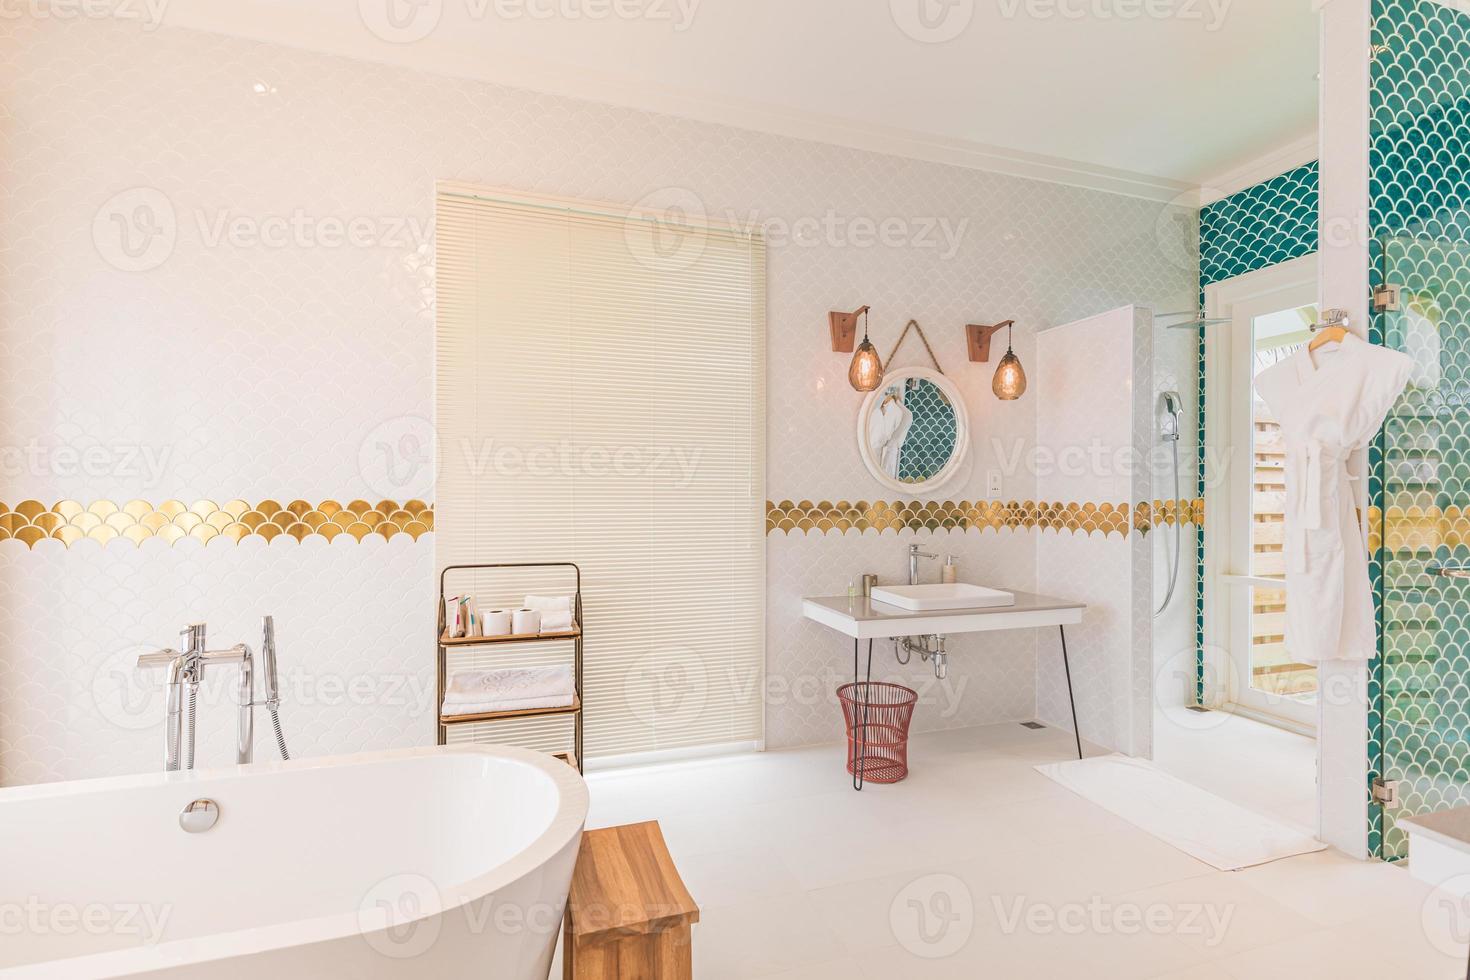 luxe moderne badkamer interieur met heldere witte kasten, witmarmeren decor, inloopdouche, gratis bad. luxueus hotelresortinterieur, elegant ontwerp in gouden stijl, groene decoratiebadkuip foto